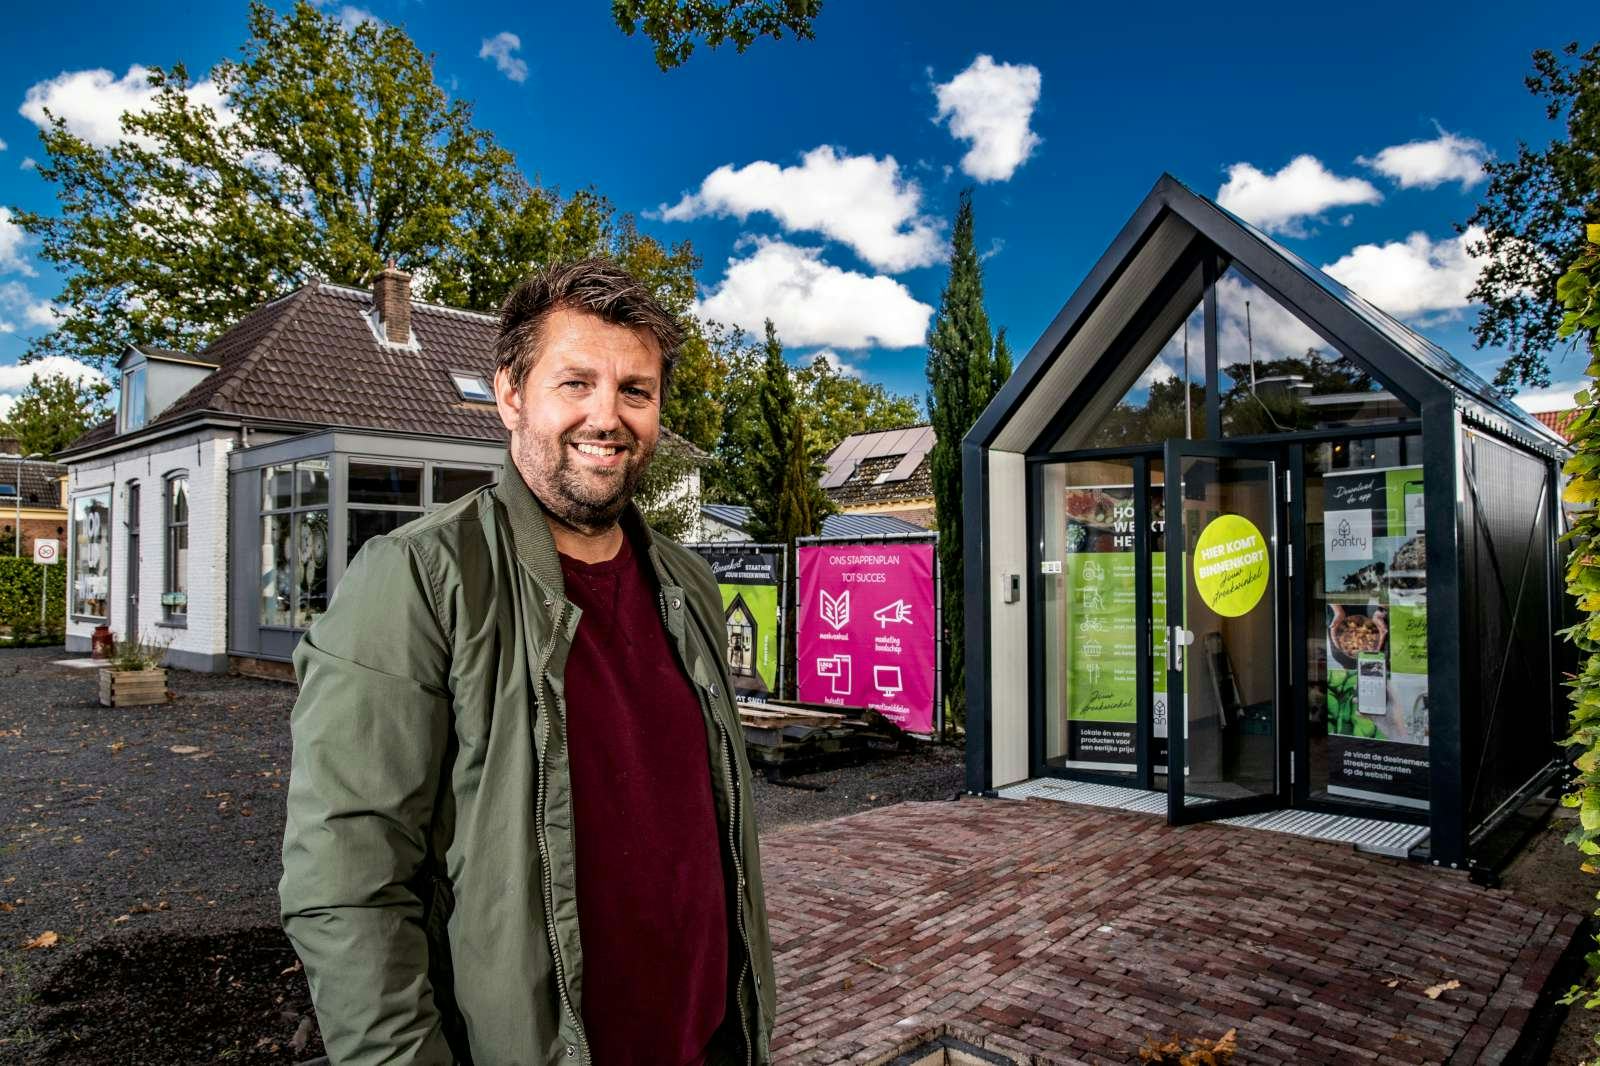 Onbemande innovatieve streeksupermarkt beleeft primeur in Gelders dorpje Wilp